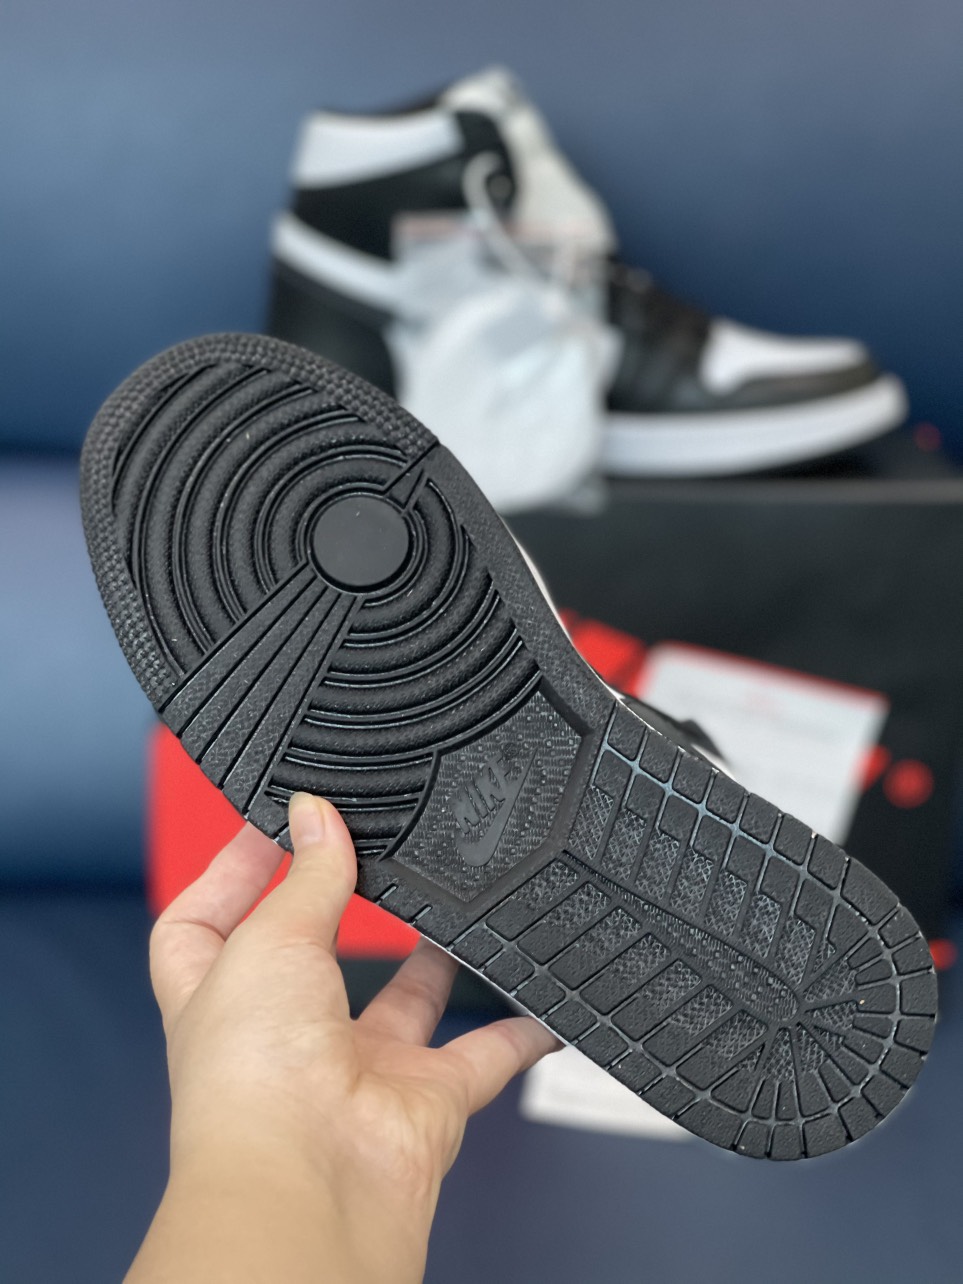 Giày Nike Air Jordan 1 Retro High OG Black White Like Auth